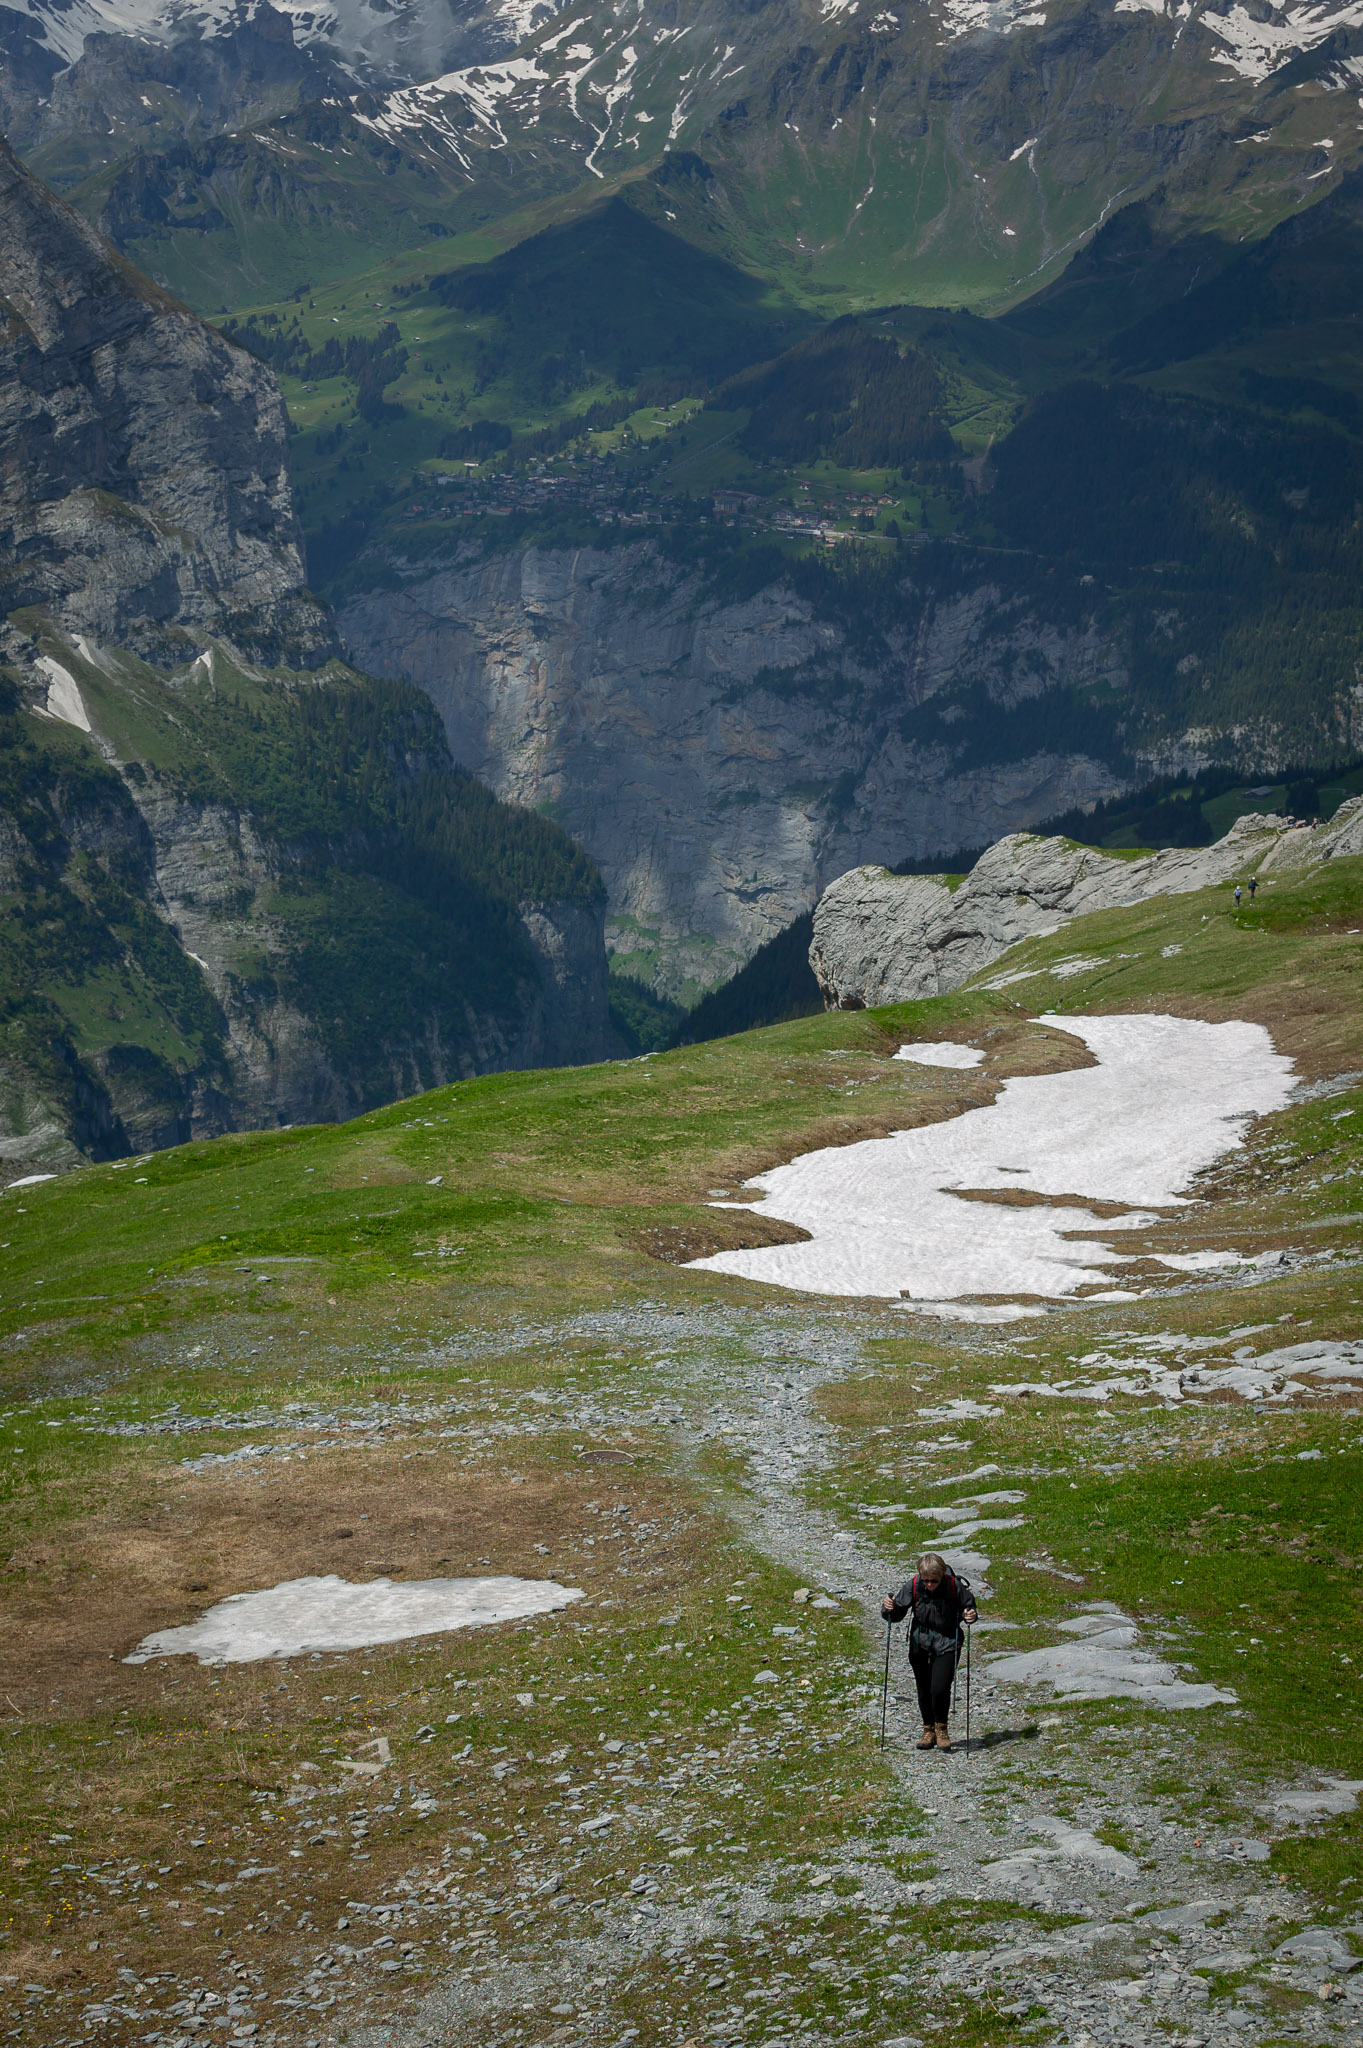 Hiking below the Eiger (Mürren in background)